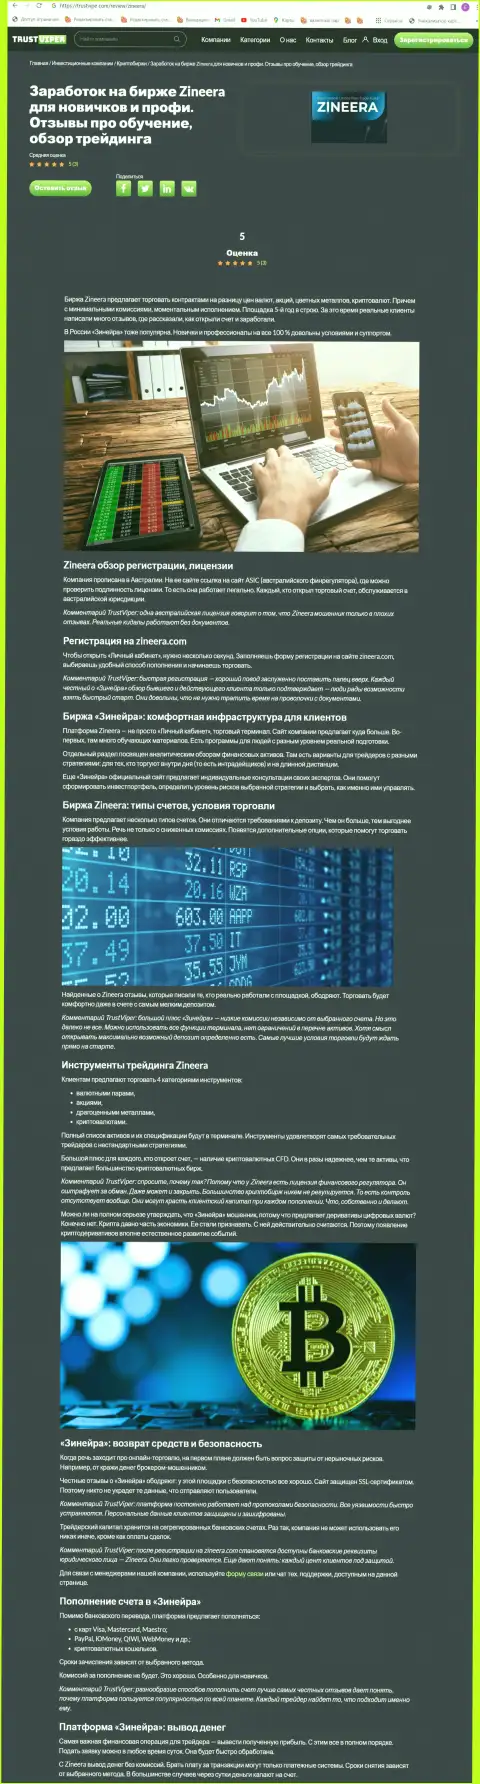 Обзор условий для торговли крипто брокерской компании Зинеера на информационном портале траствайпер ком